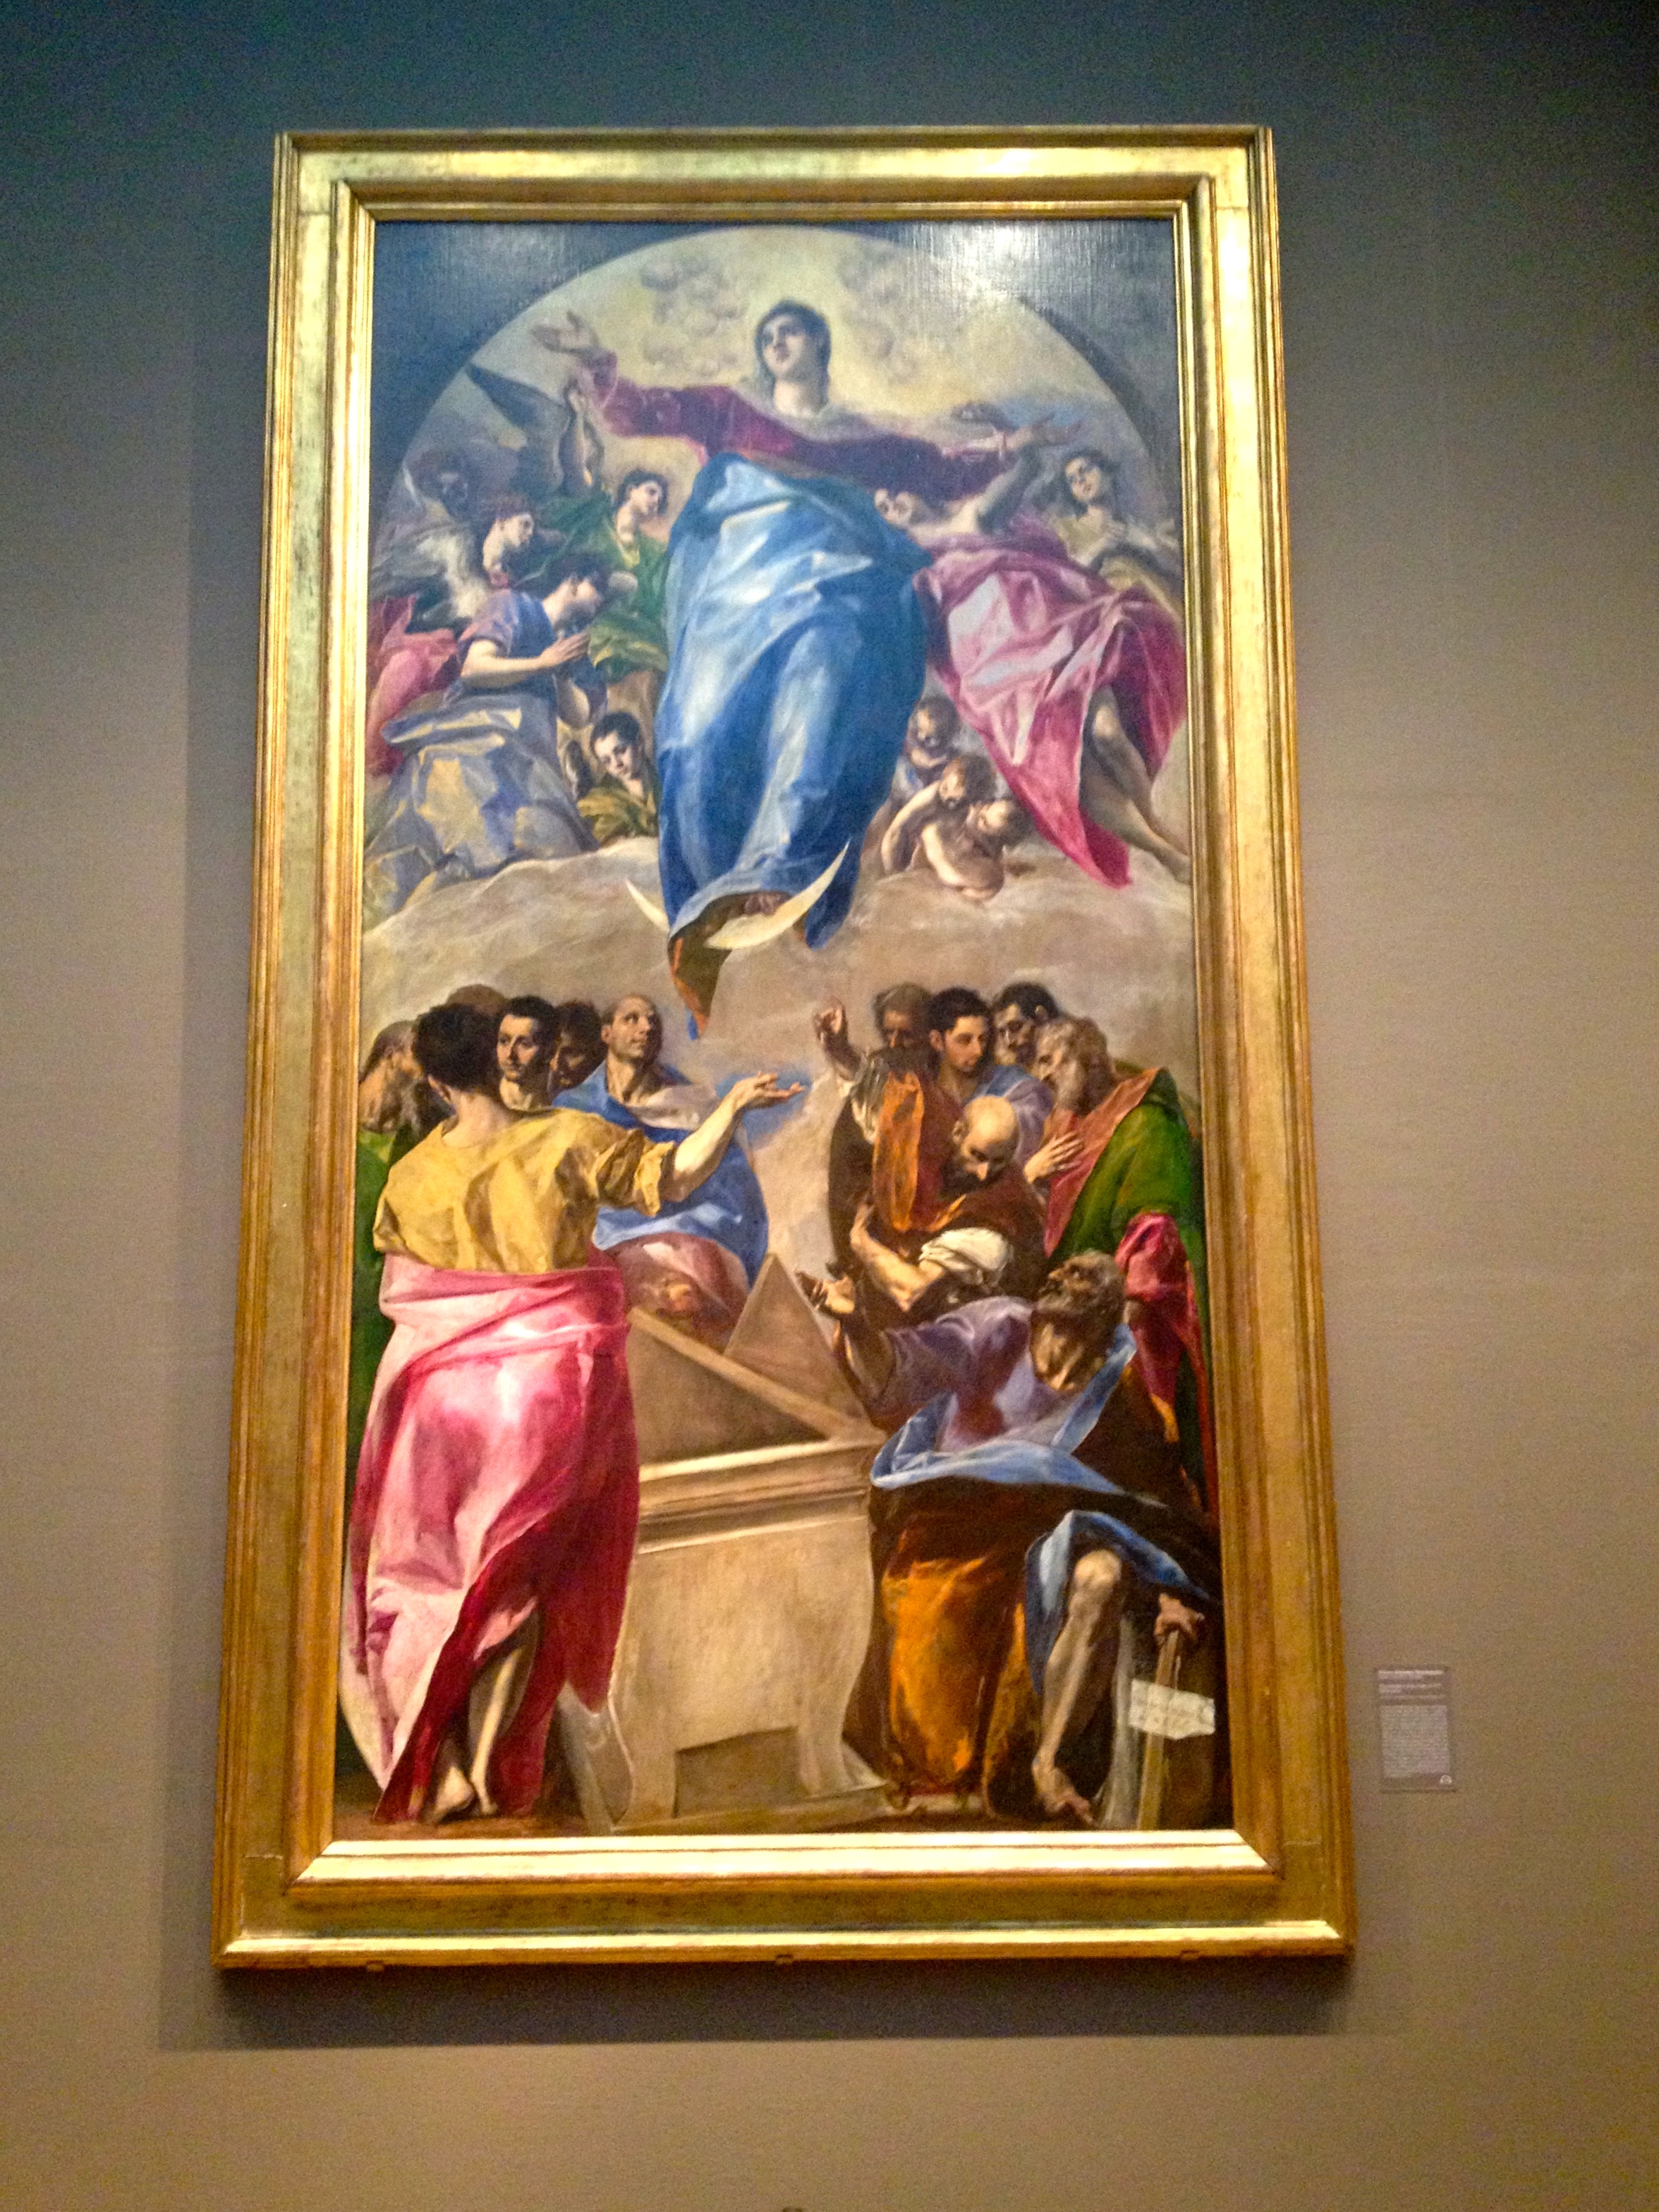 El Greco artwork